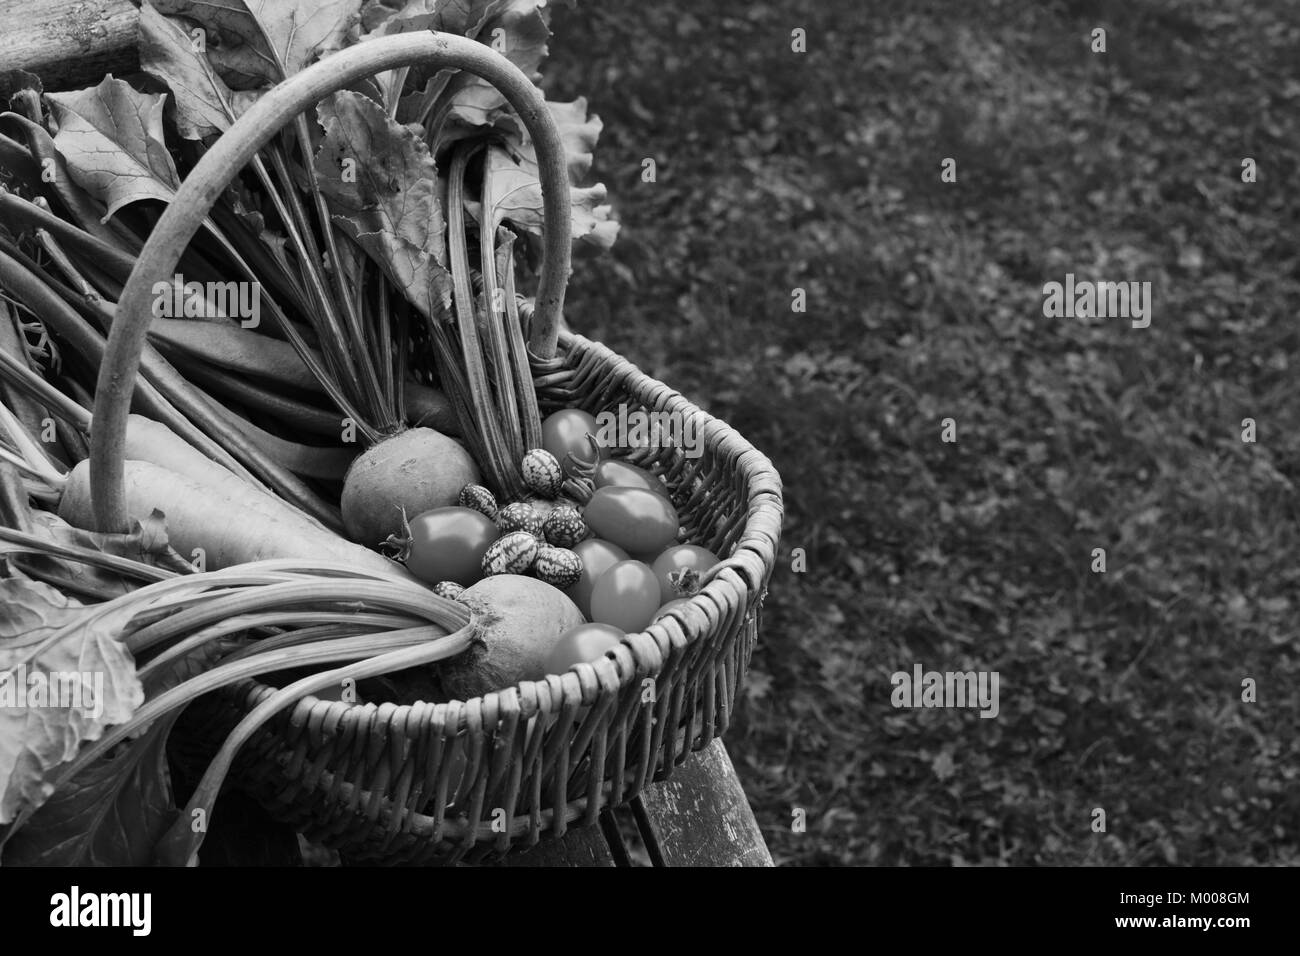 Geflochtener Korb mit frisch geernteten Gemüse gefüllt aus einer Zuteilung sitzt auf einem Holz garten Sitzbank; Kopie Speicherplatz auf Gras - monochrom Verarbeitung Stockfoto